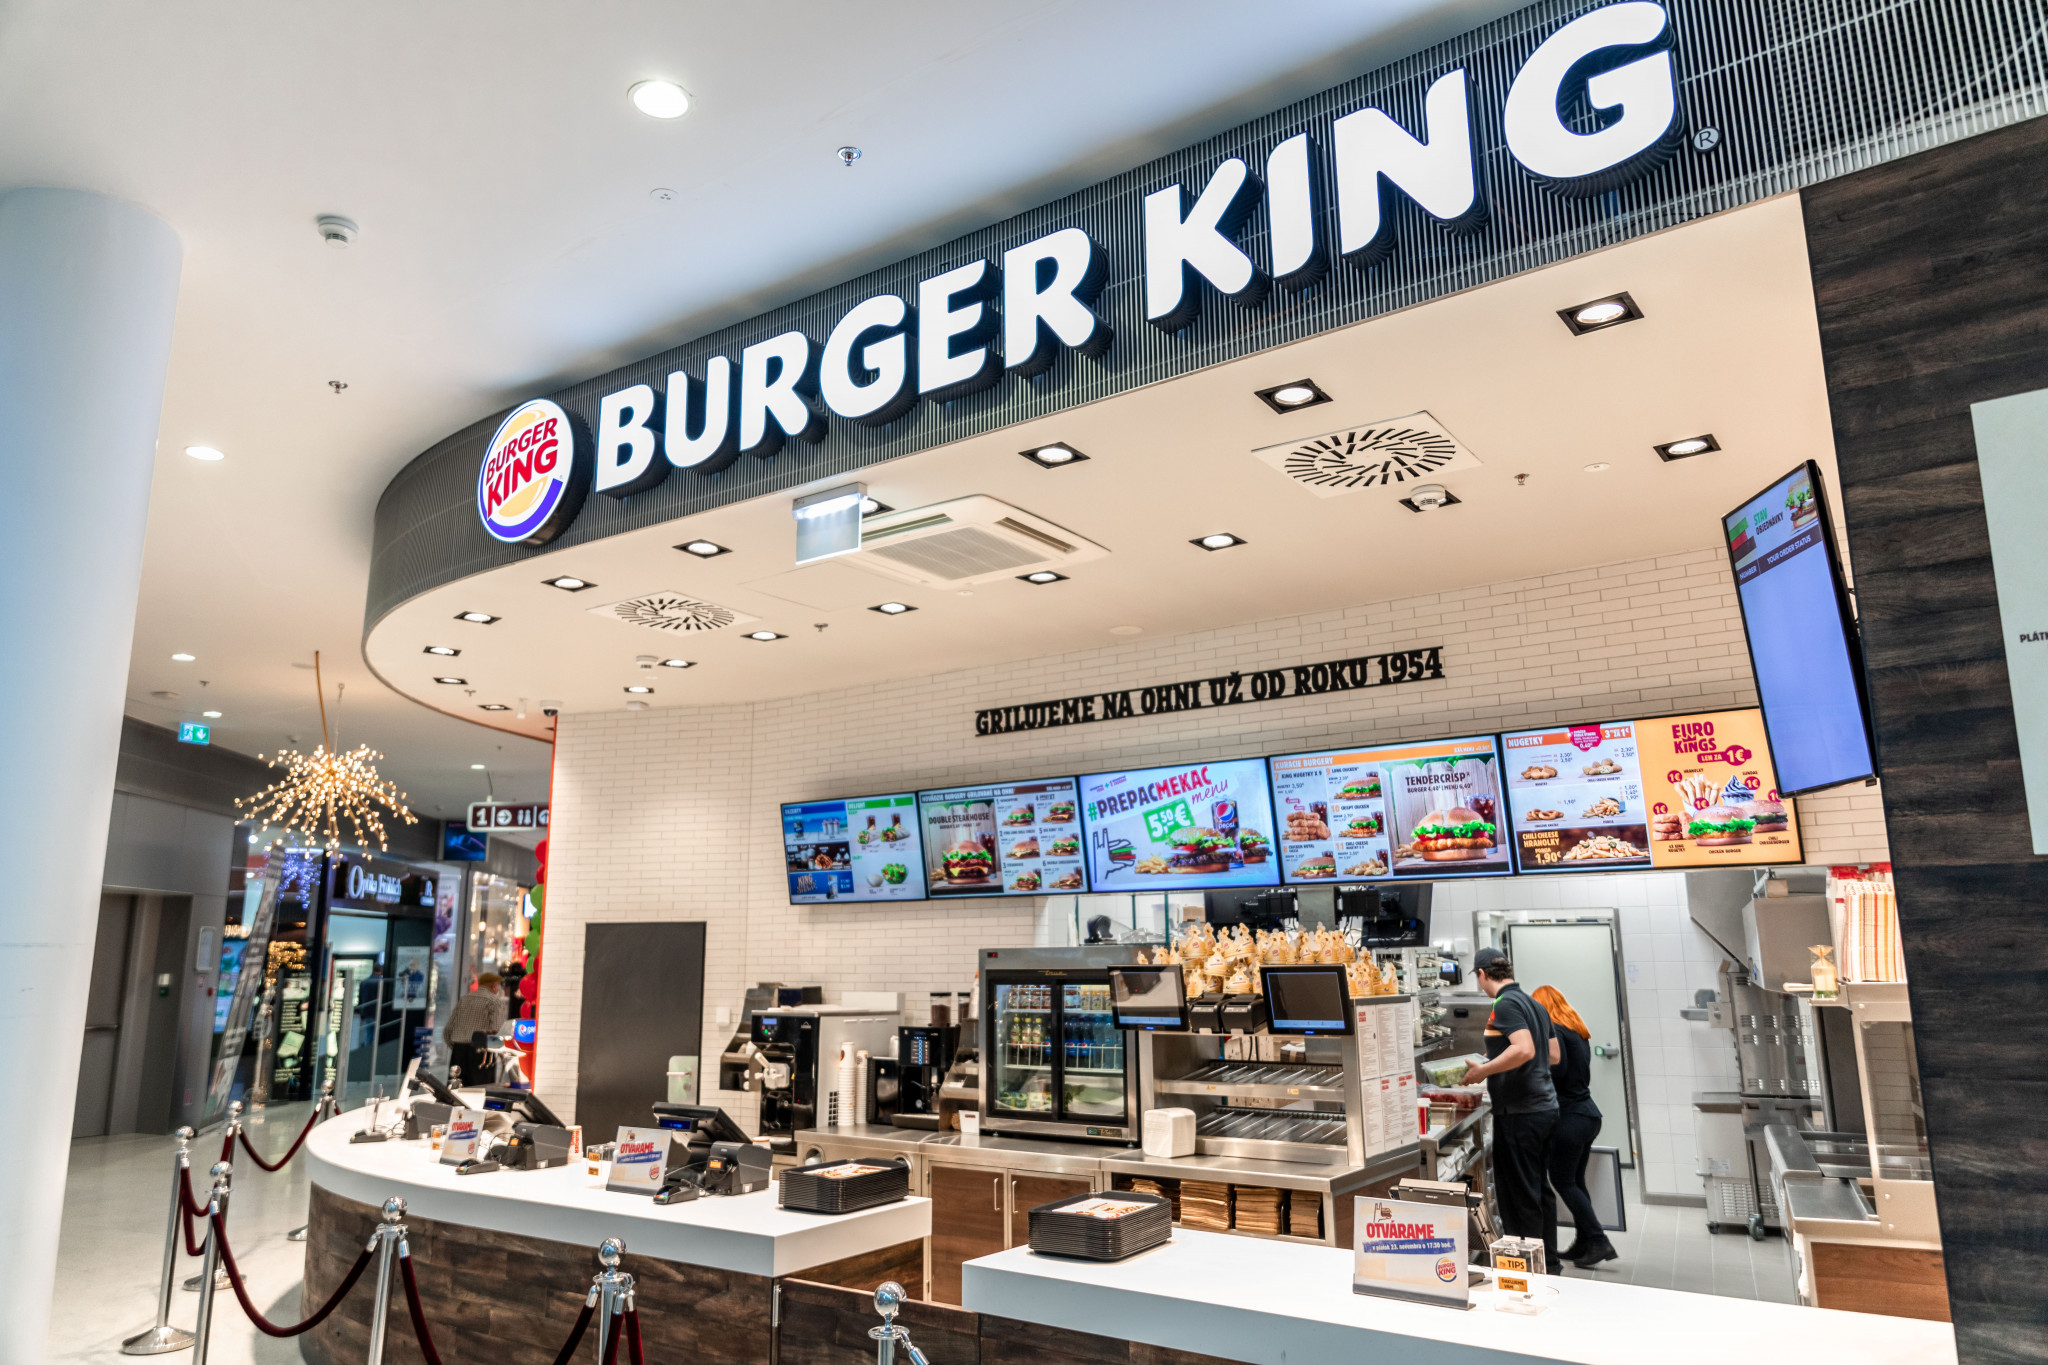 Strategie Burger King prevádzka Bory Mall